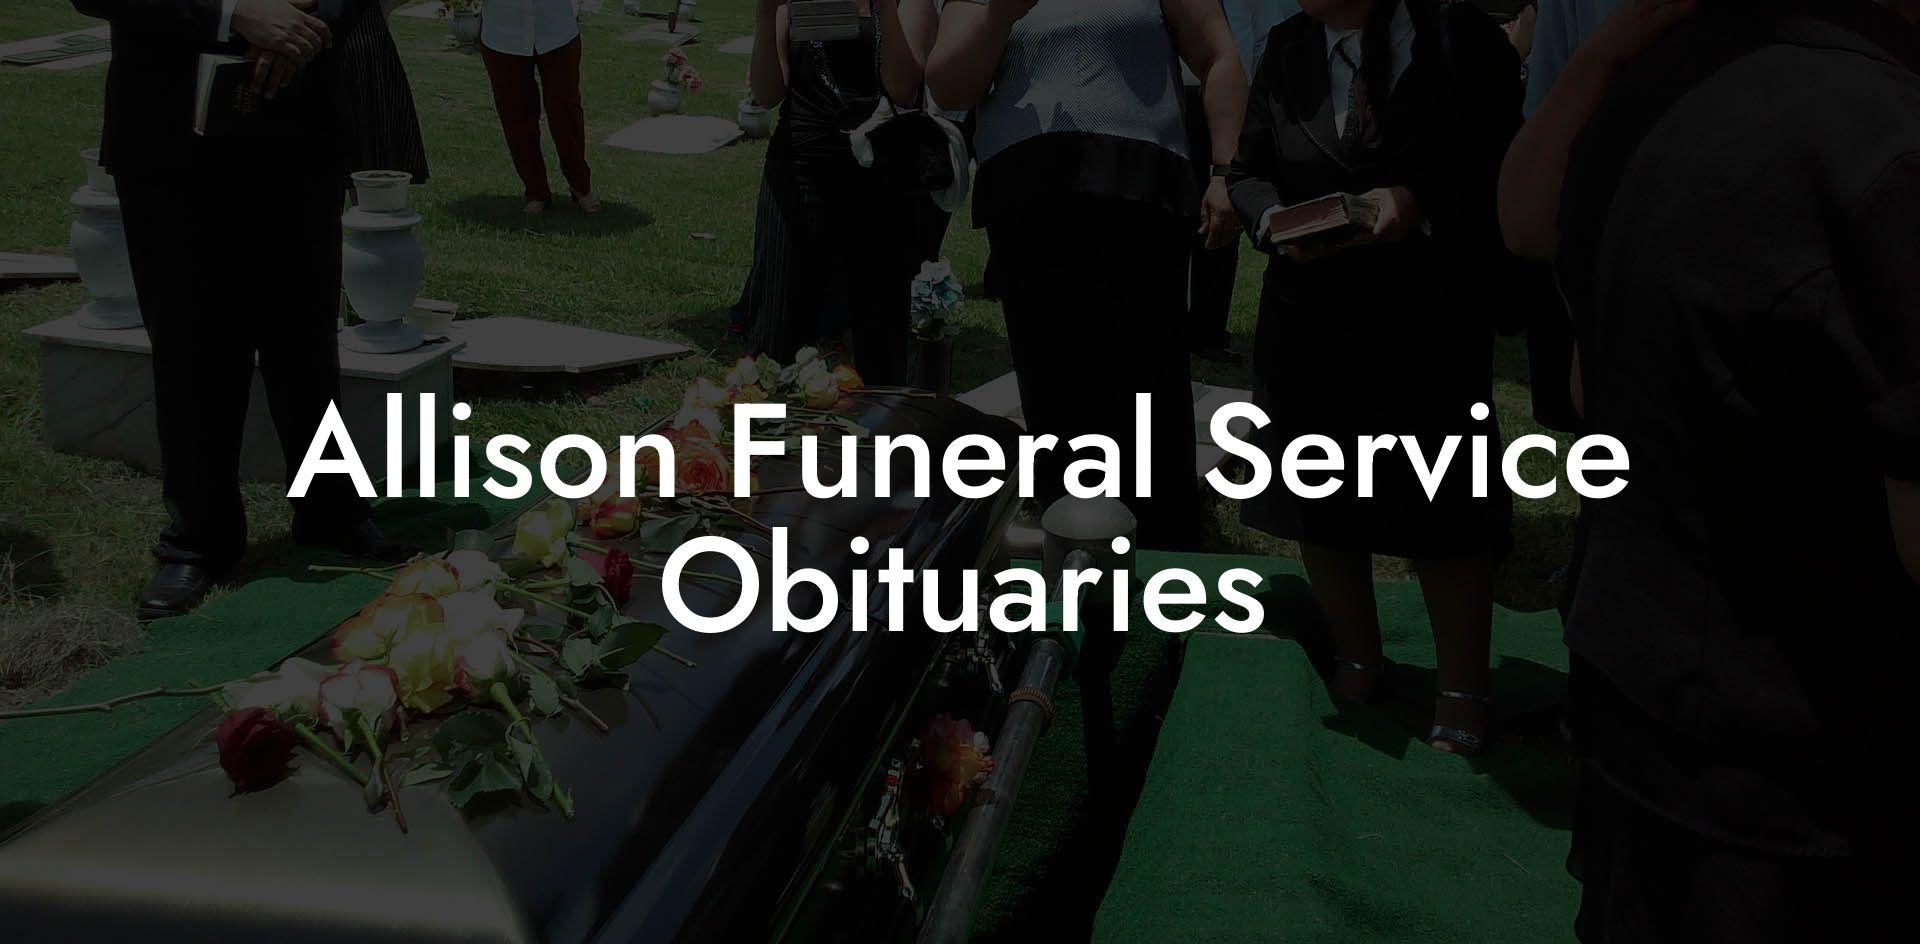 Allison Funeral Service Obituaries